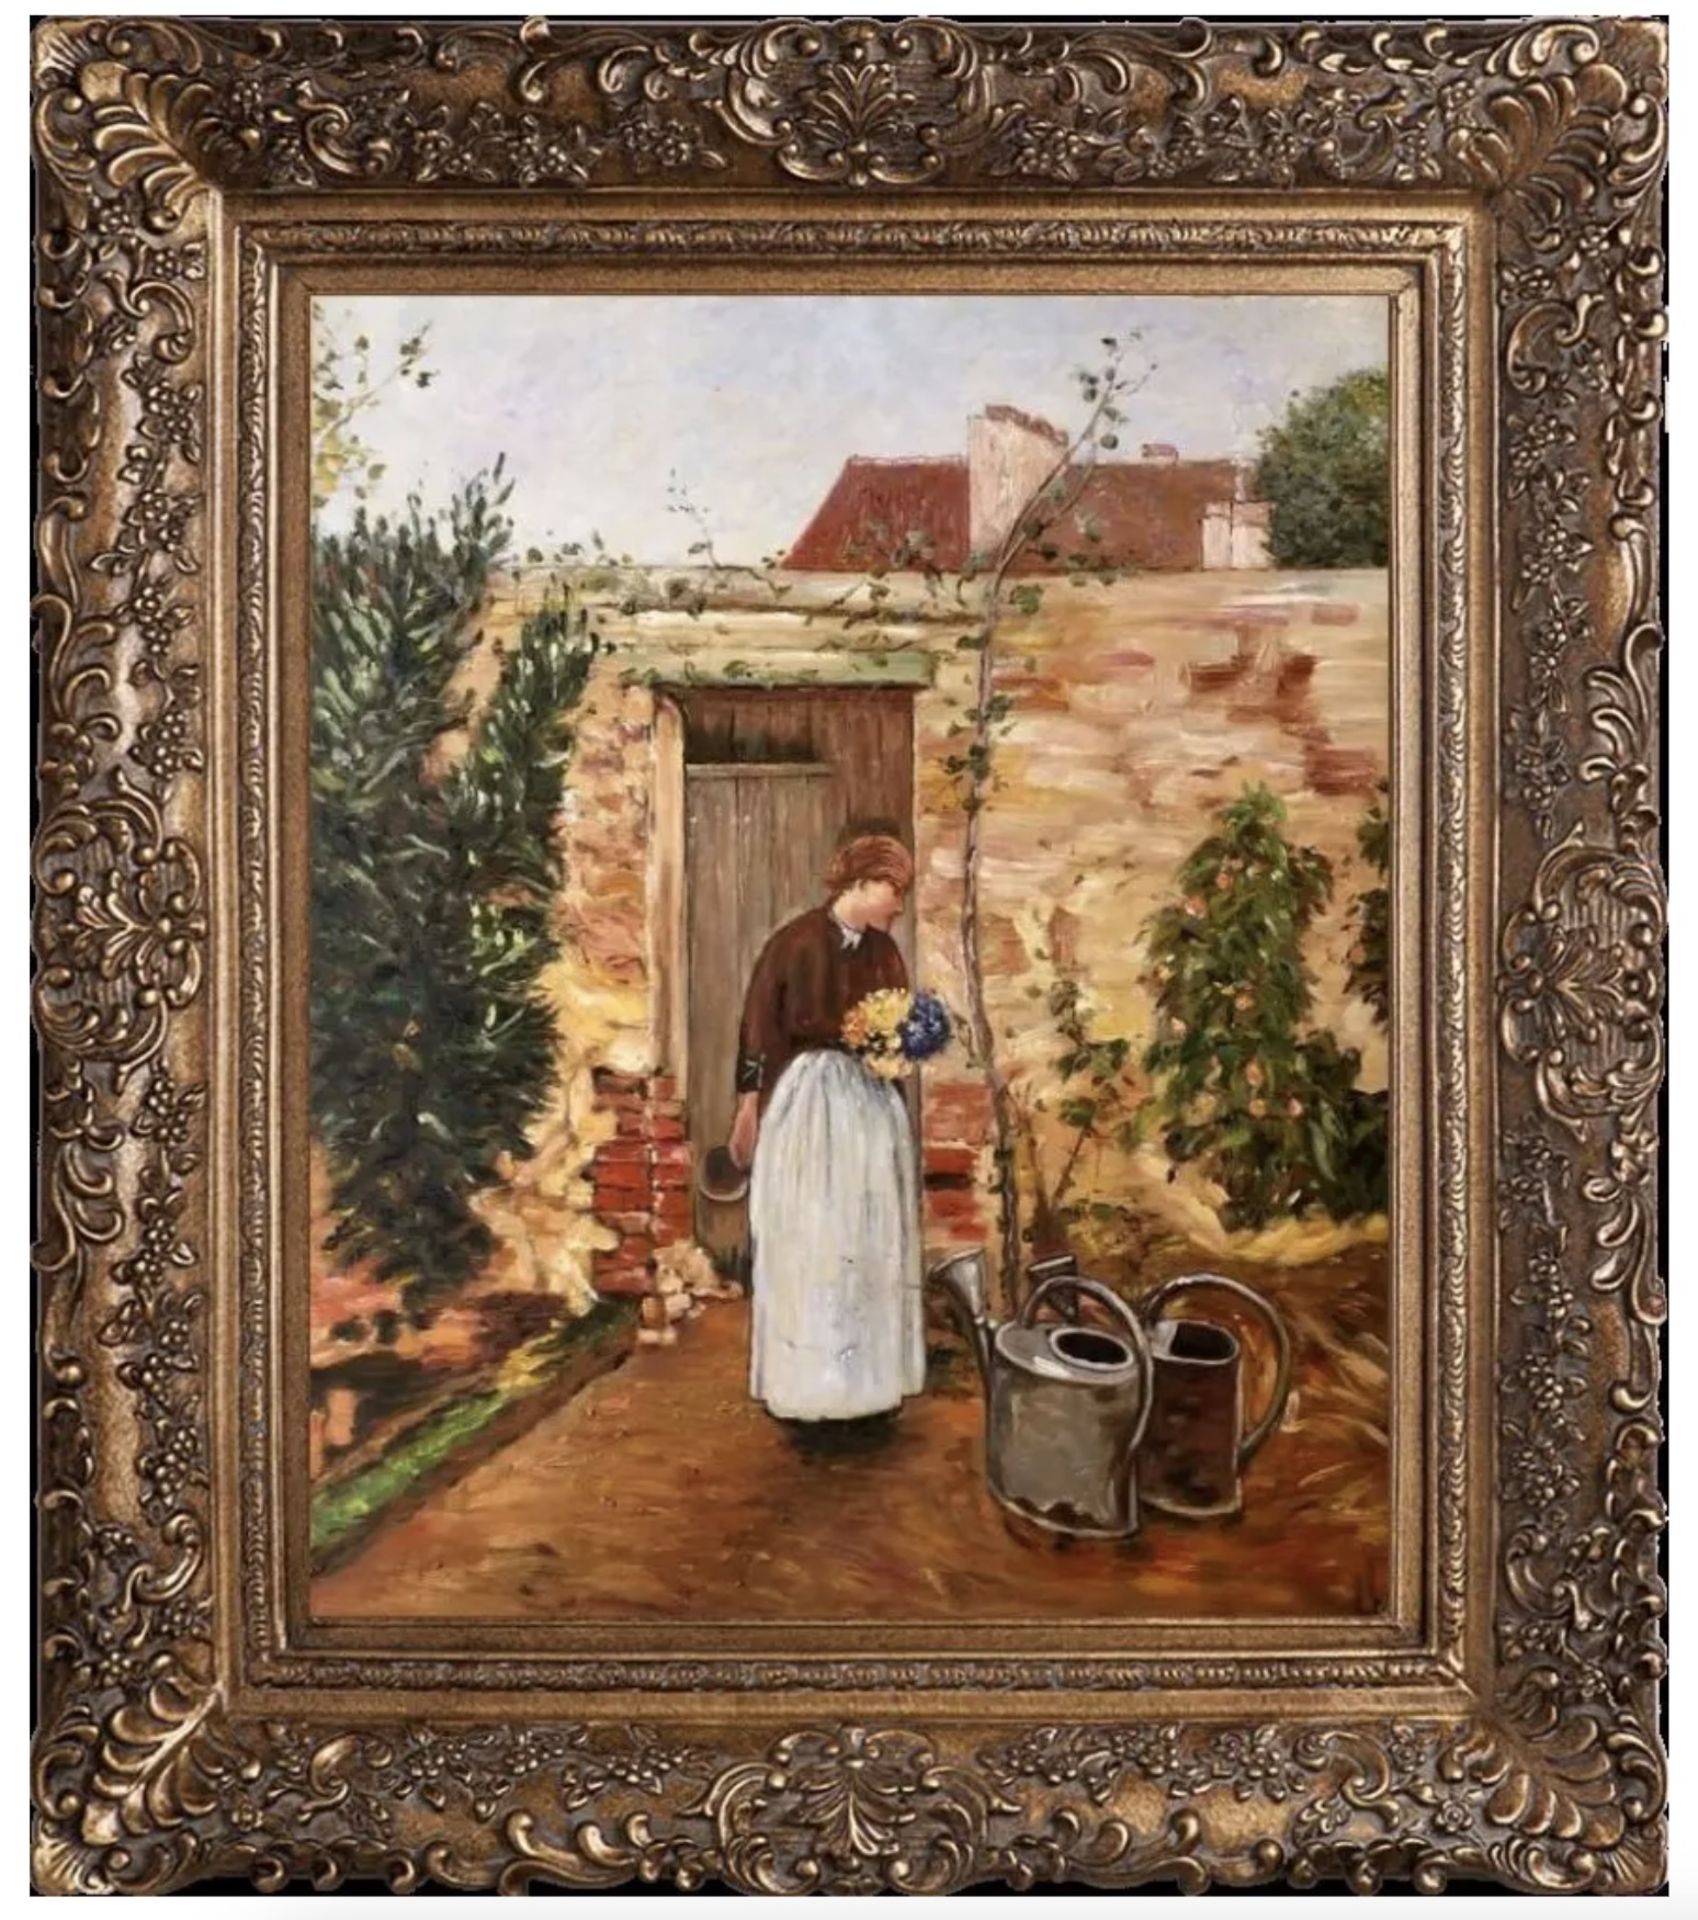 Childe Hassam "The Garden Door, 1888" Oil Painting, After